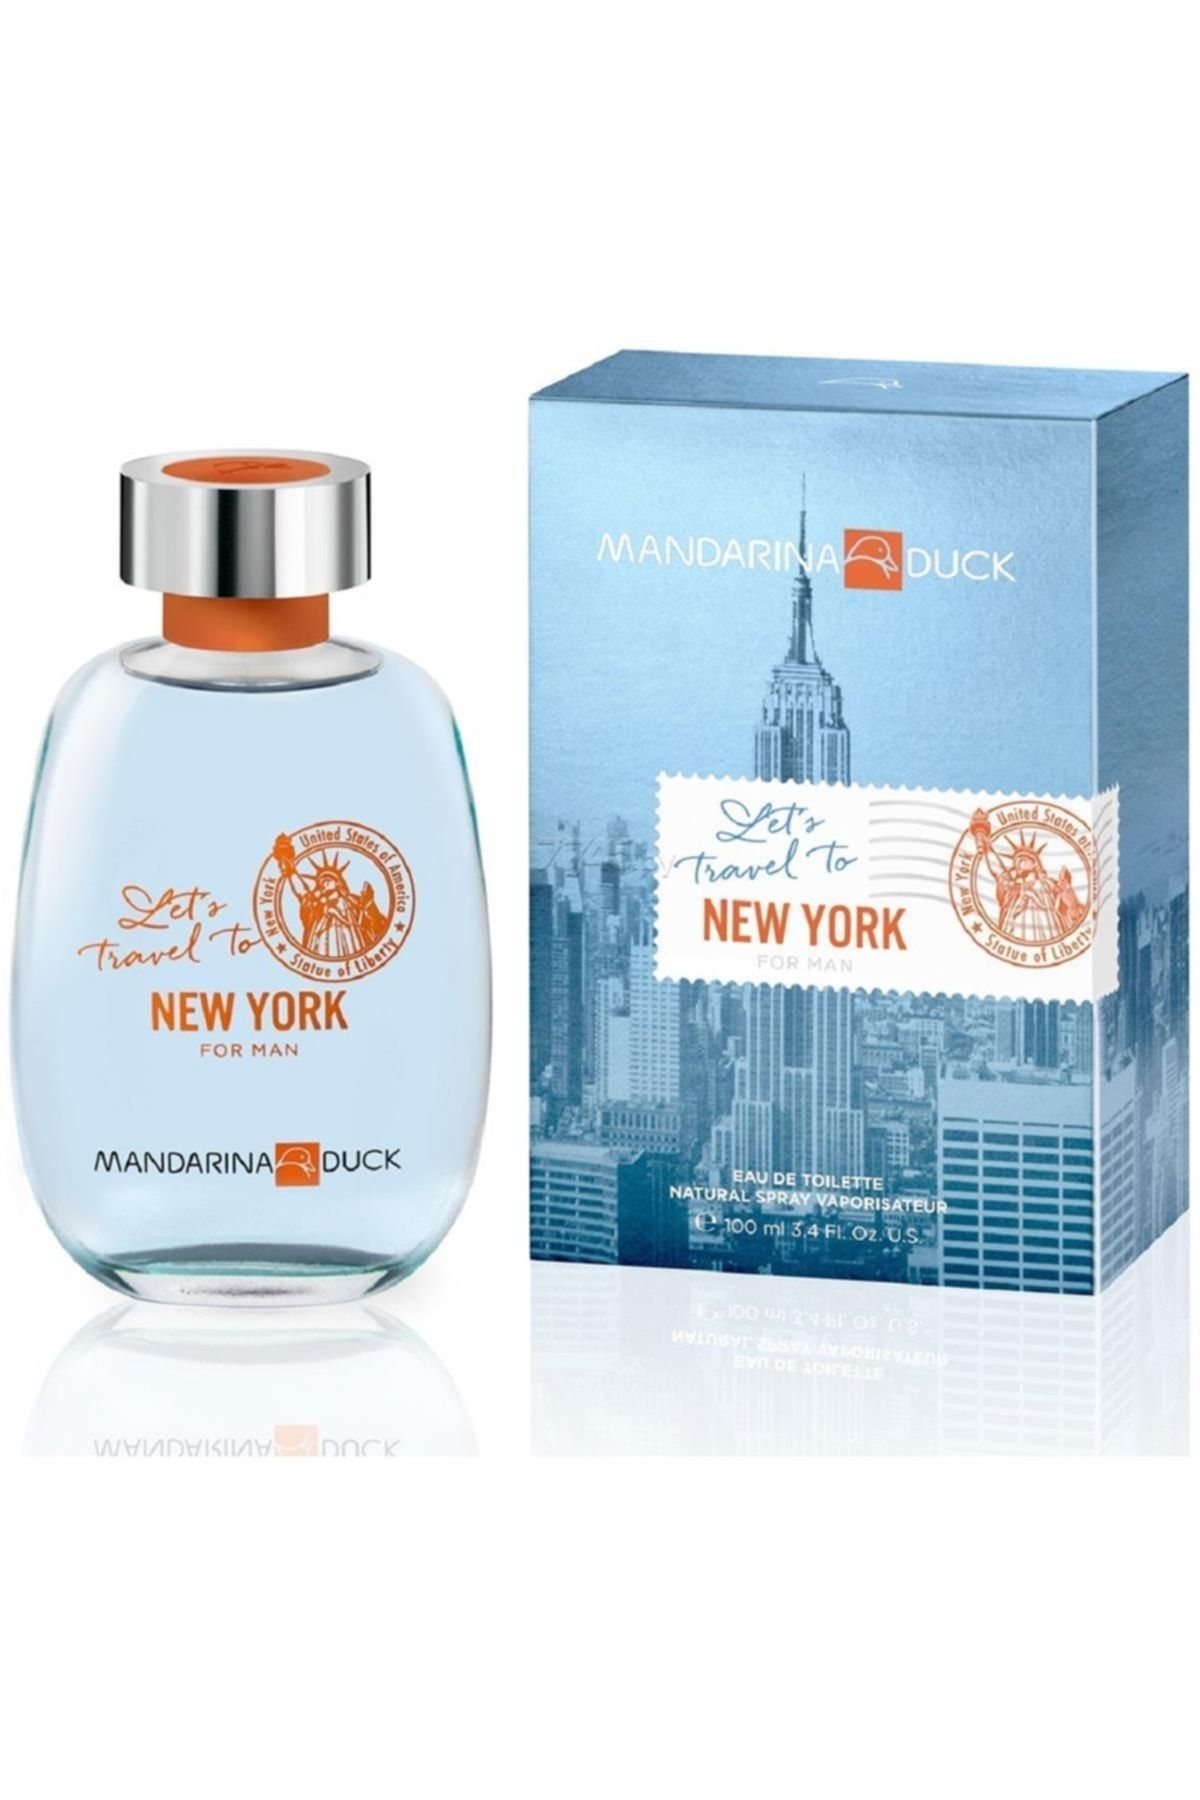 Mandarina Duck Marka: Let's Travel Ny Erkek Edt 100 Ml Kategori: Parfüm